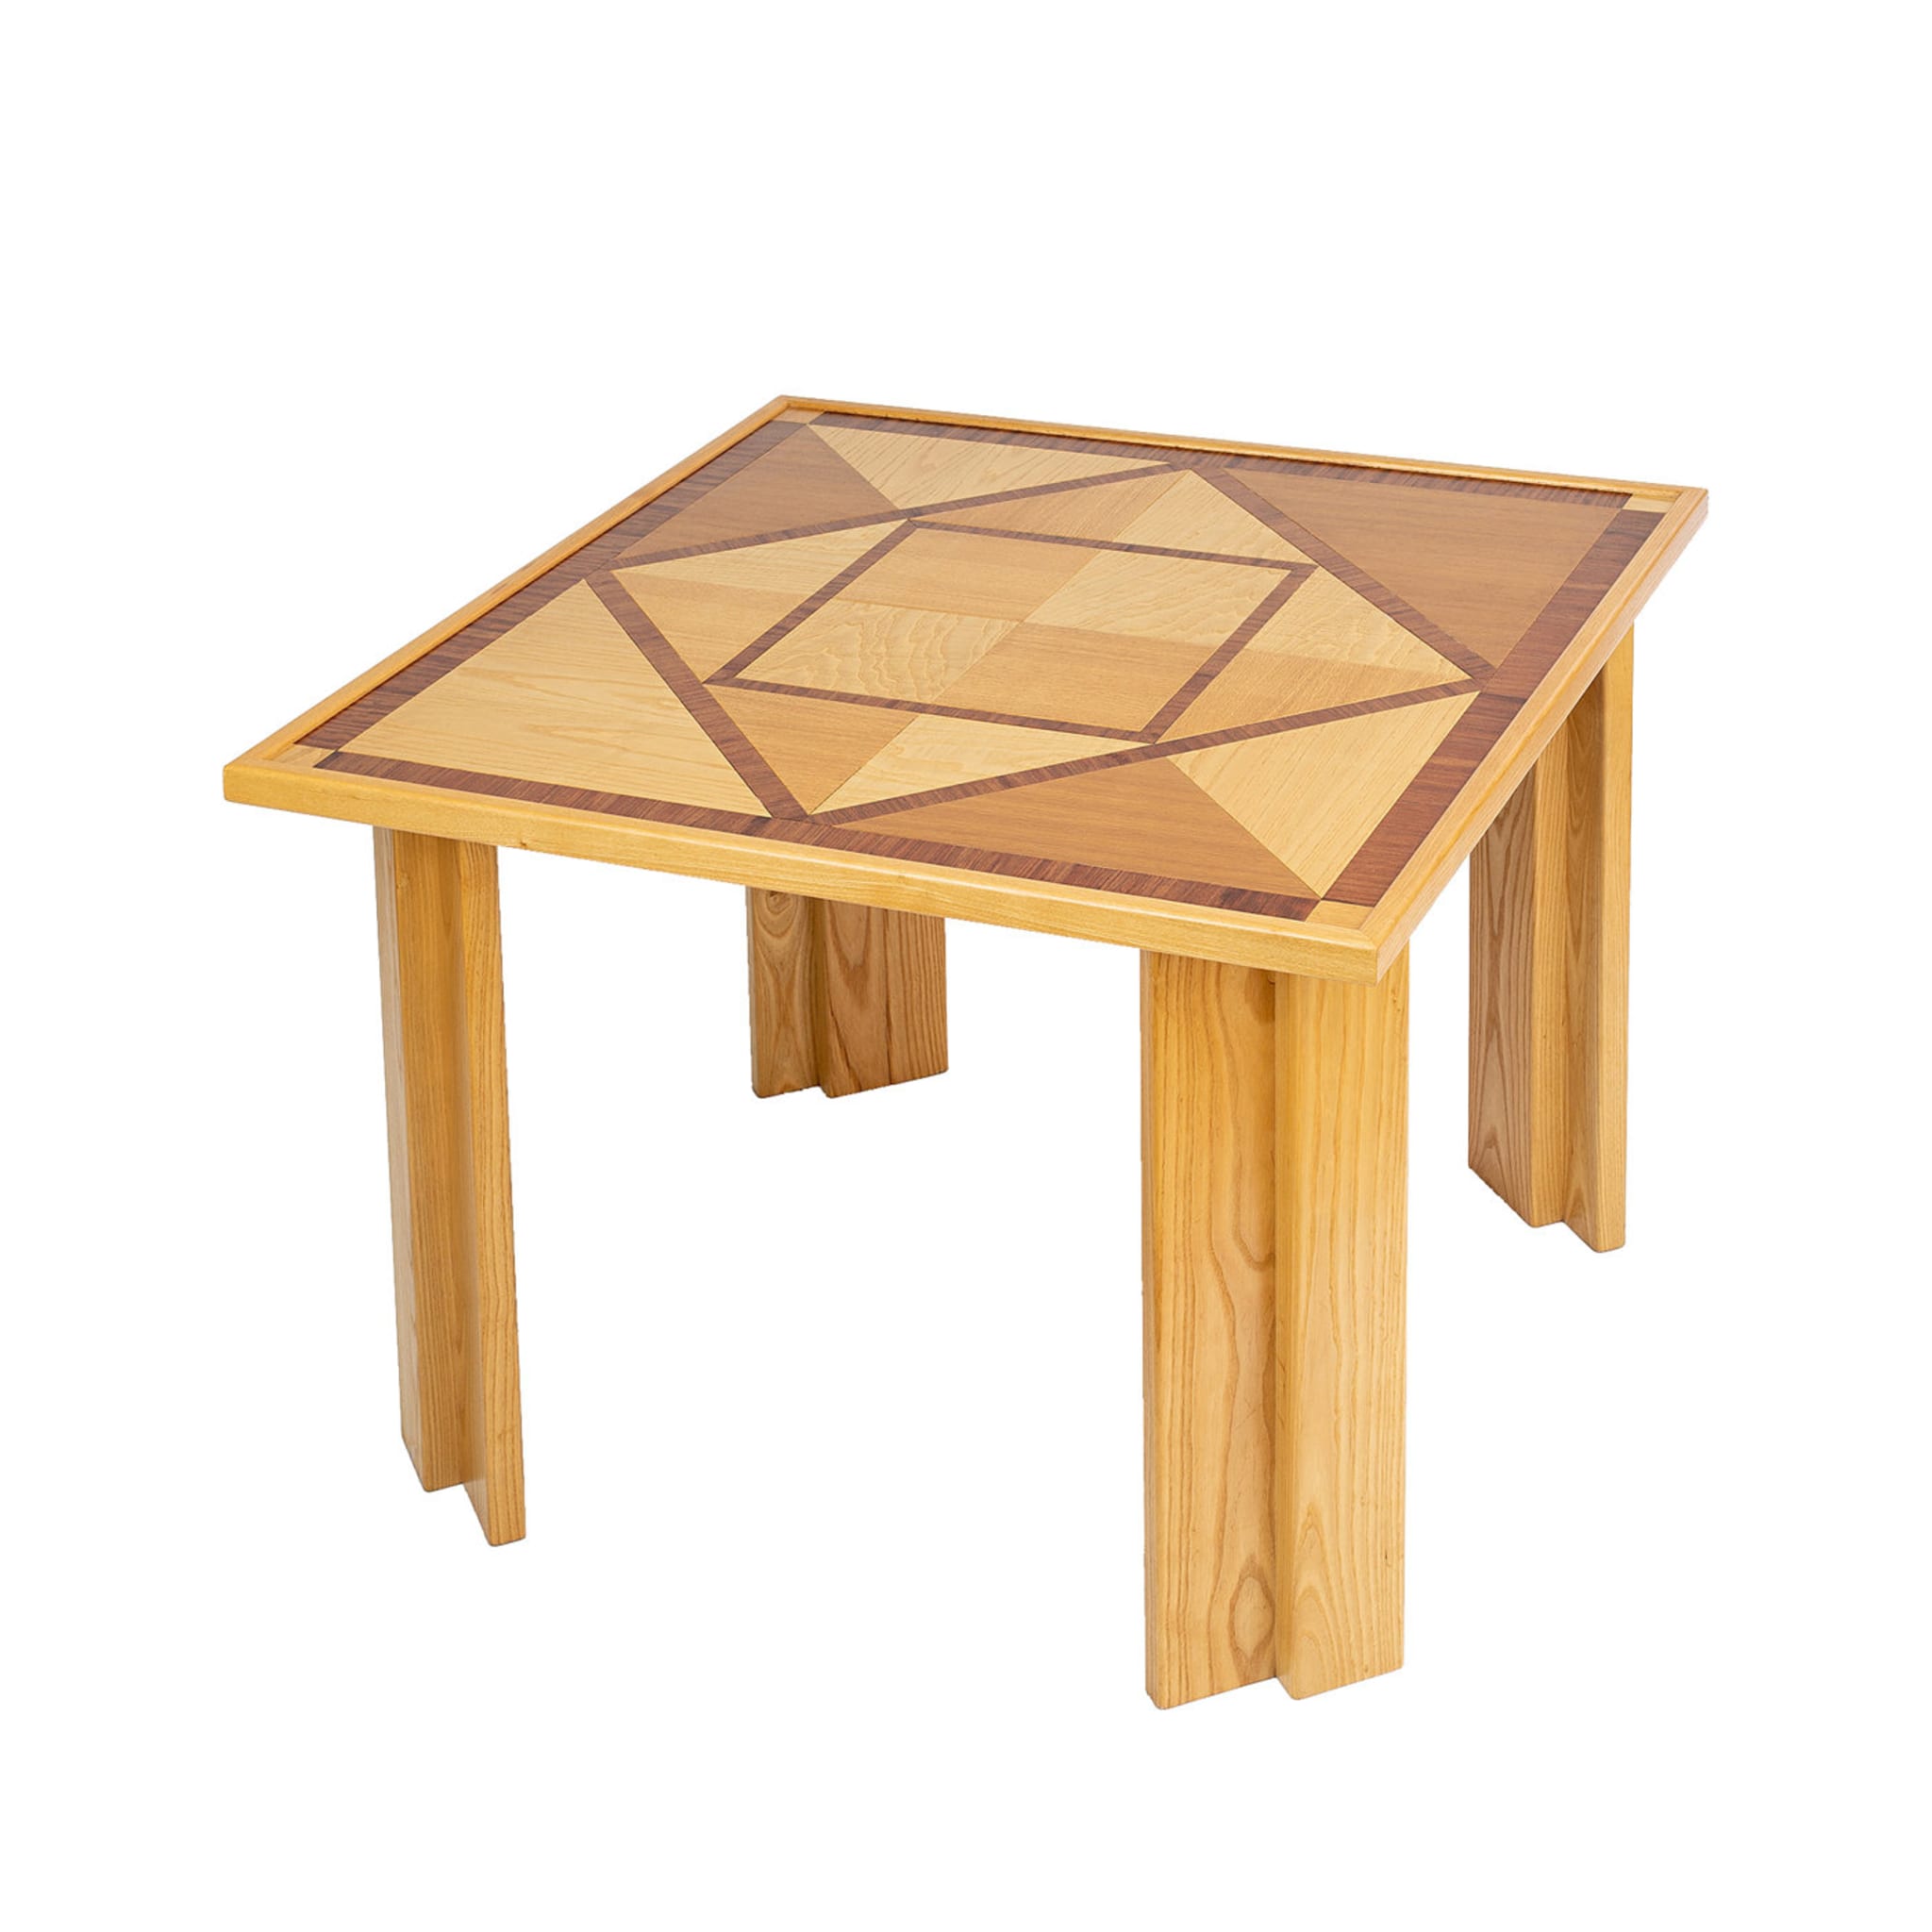 Table à manger en bois avec incrustation géométrique - Vue principale